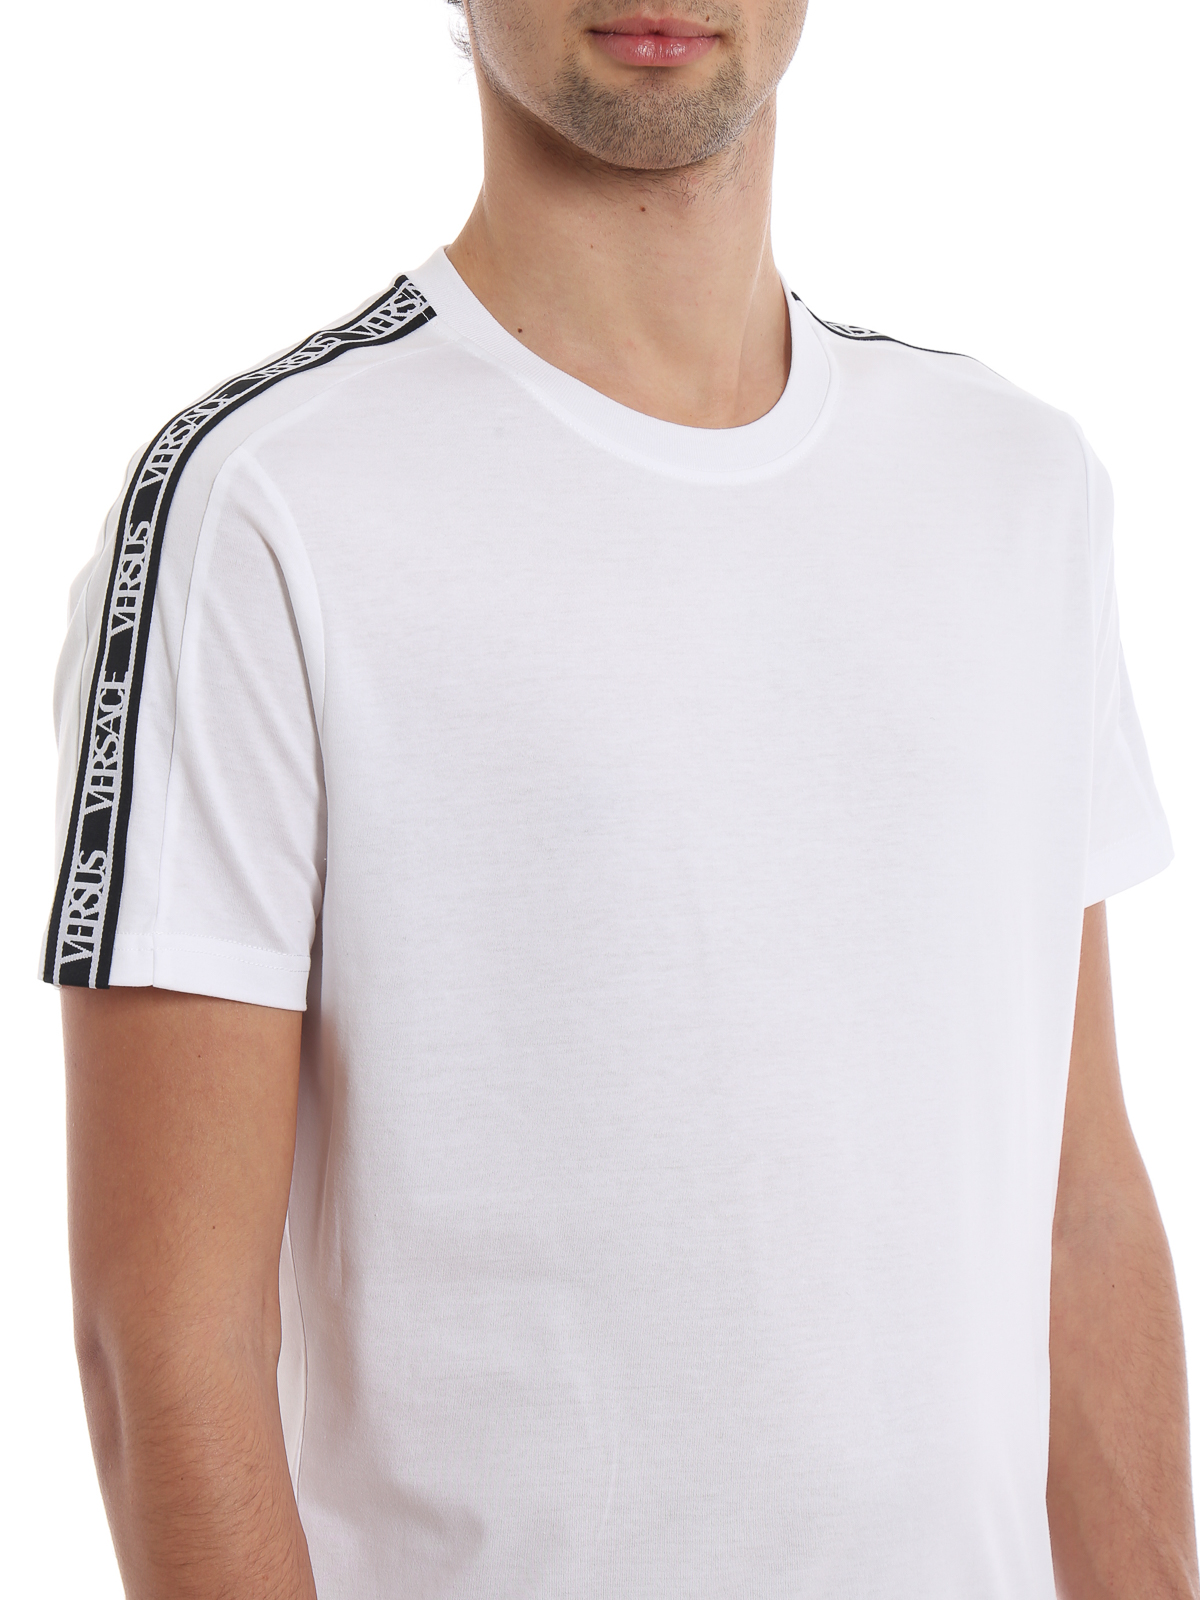 T-shirts Versus Versace - Versus Logo Tape white T-shirt ...